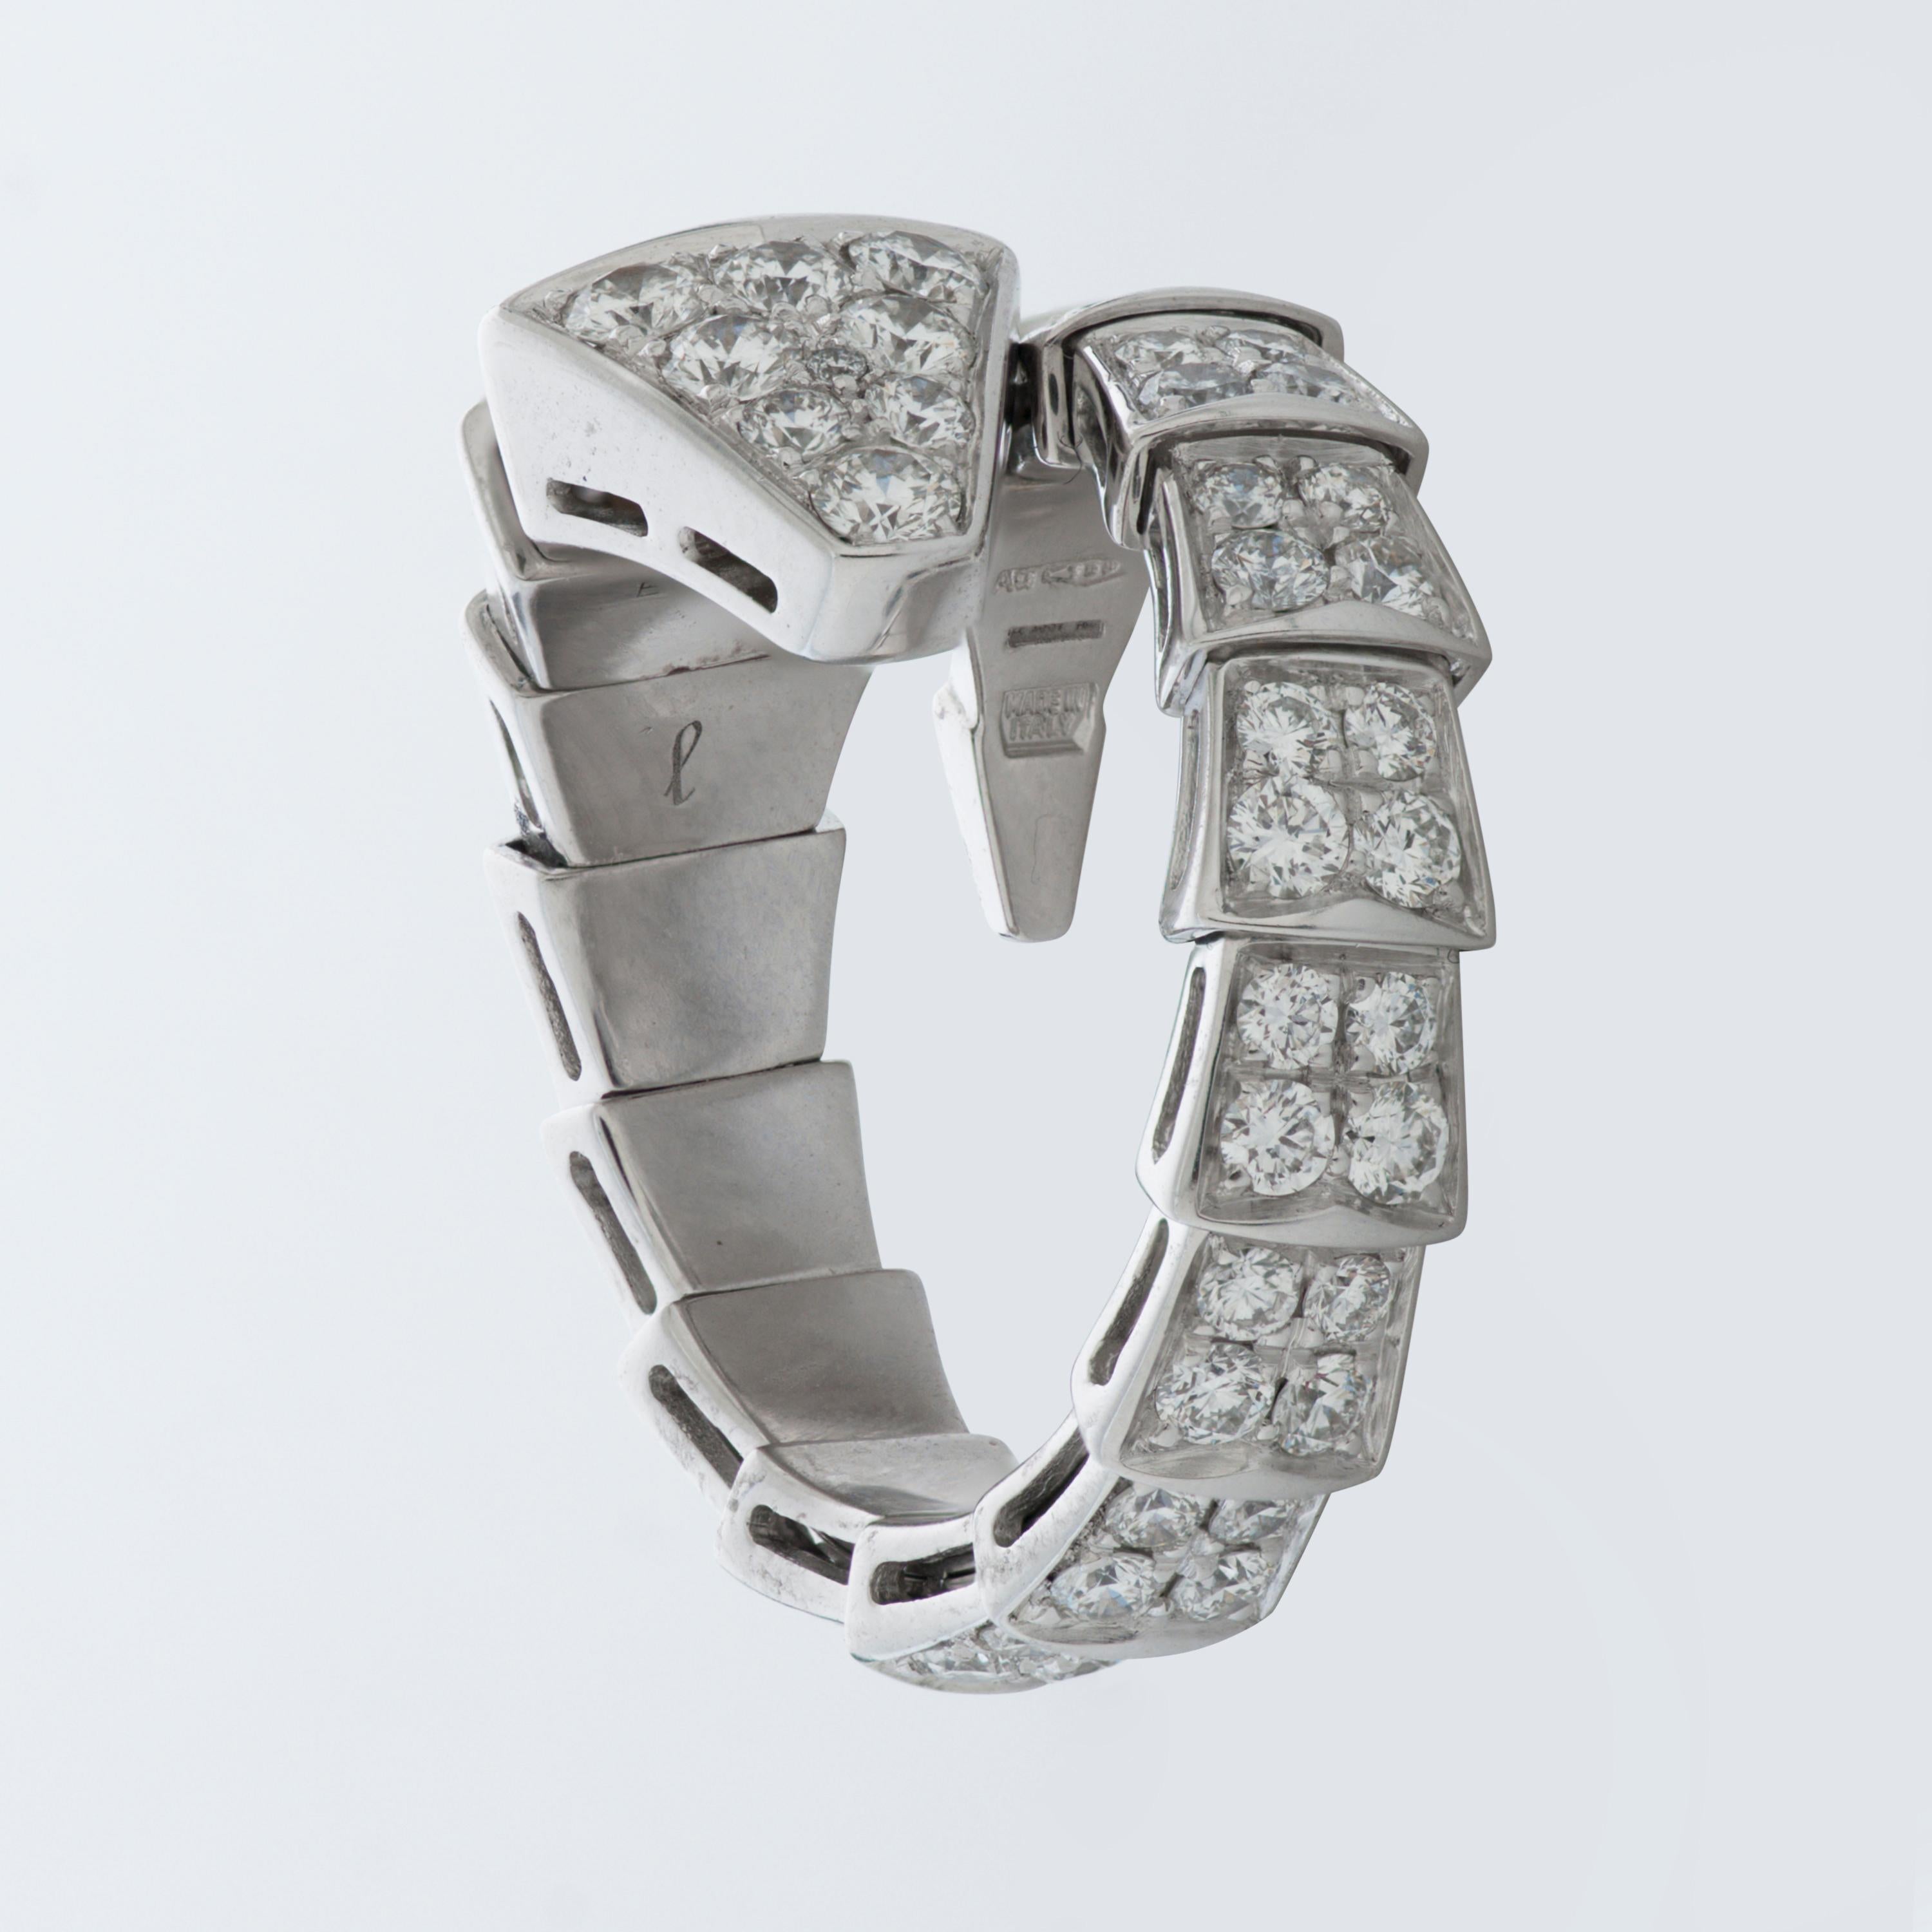 Cette bague Bulgari de la collection Serpenti Viper présente des diamants ronds de taille brillant d'environ 1,74 carat, sertis en pavage dans de l'or blanc 18 carats. 

Taille Large, flexible.  Convient aux tailles 7-7.75 US (54-56 EU).
Numéroté et